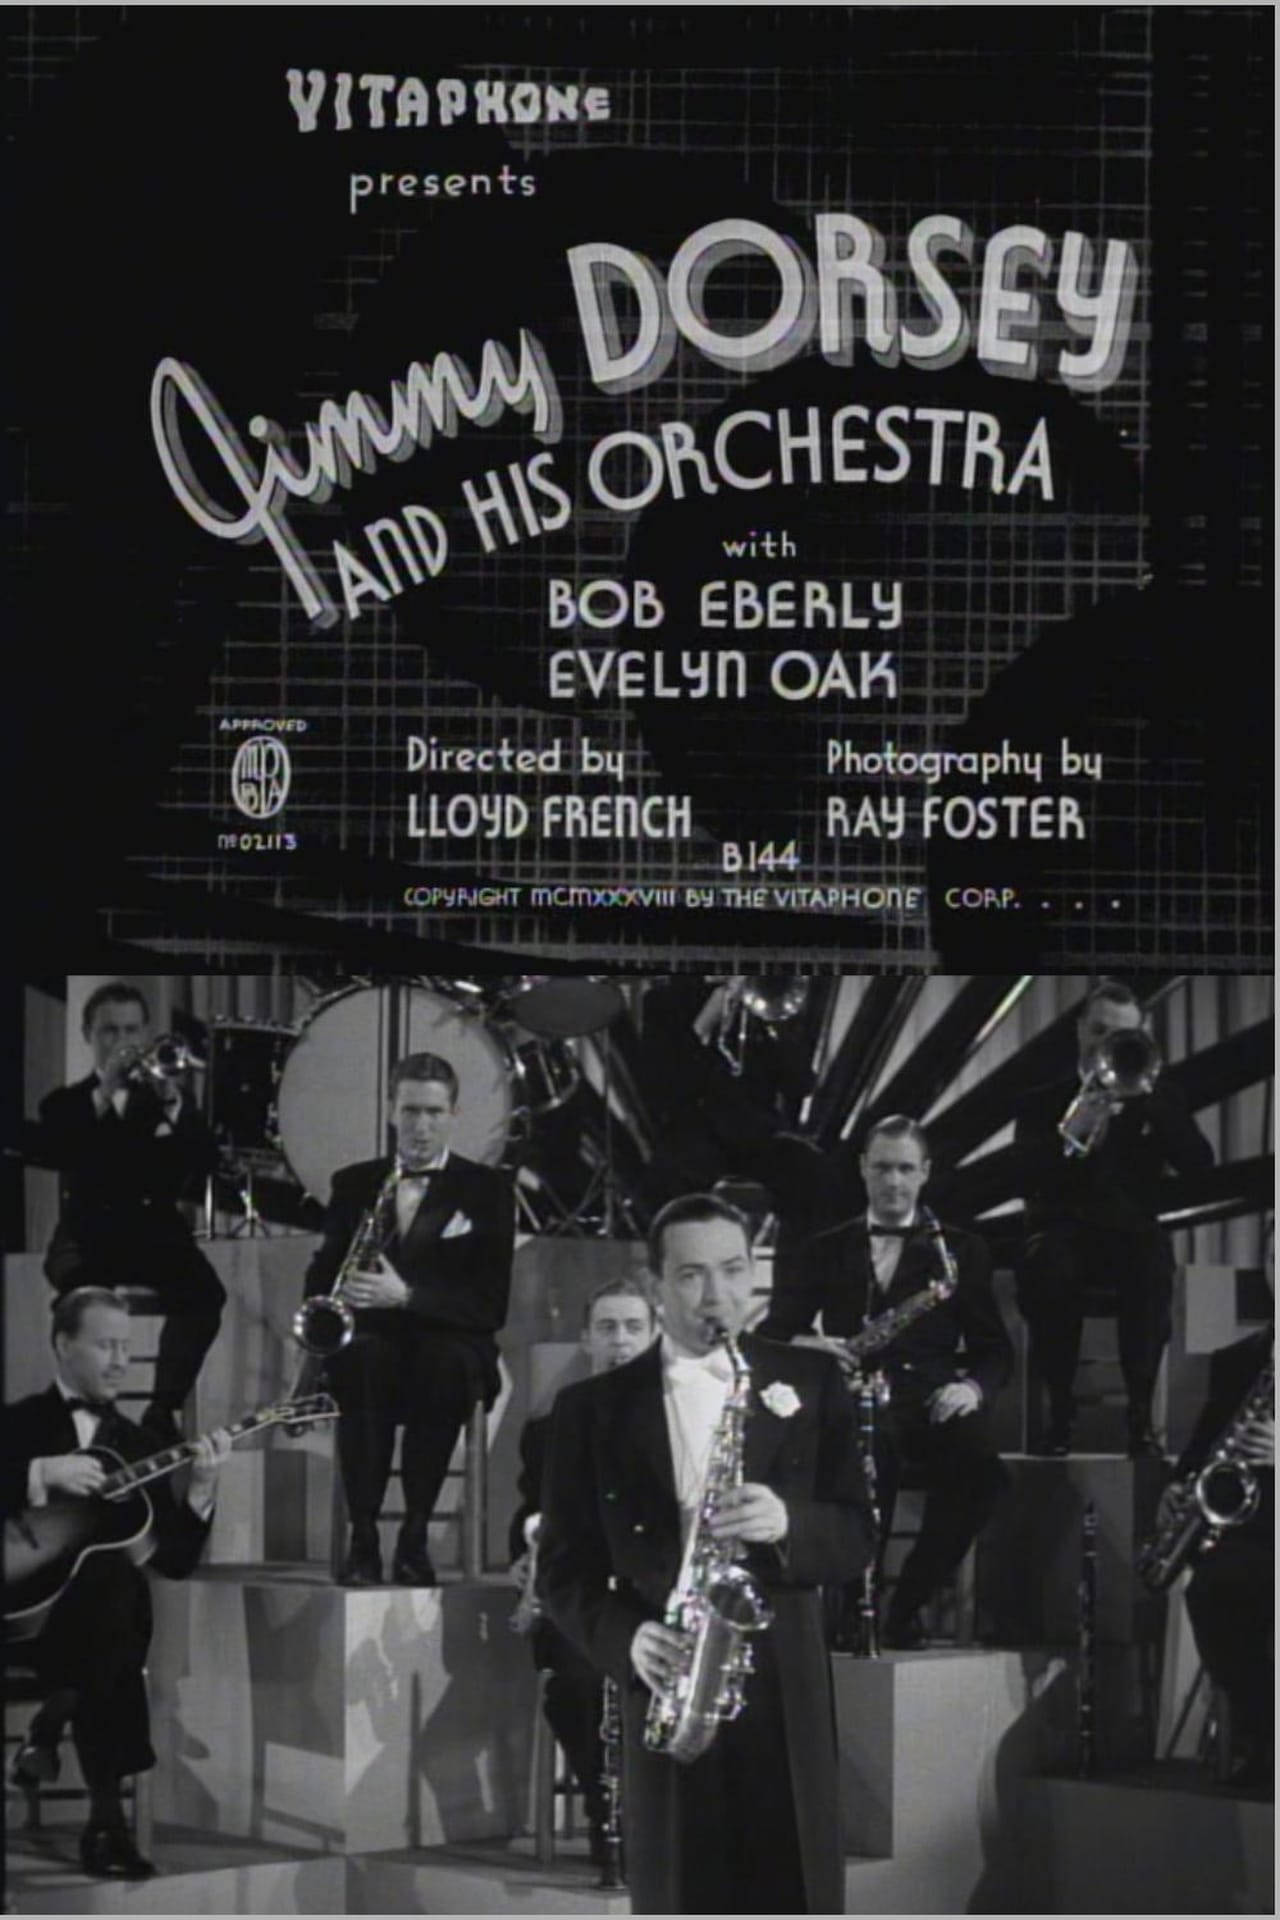 Jimmydorsey Mit Seinem Orchester Plakat Wallpaper